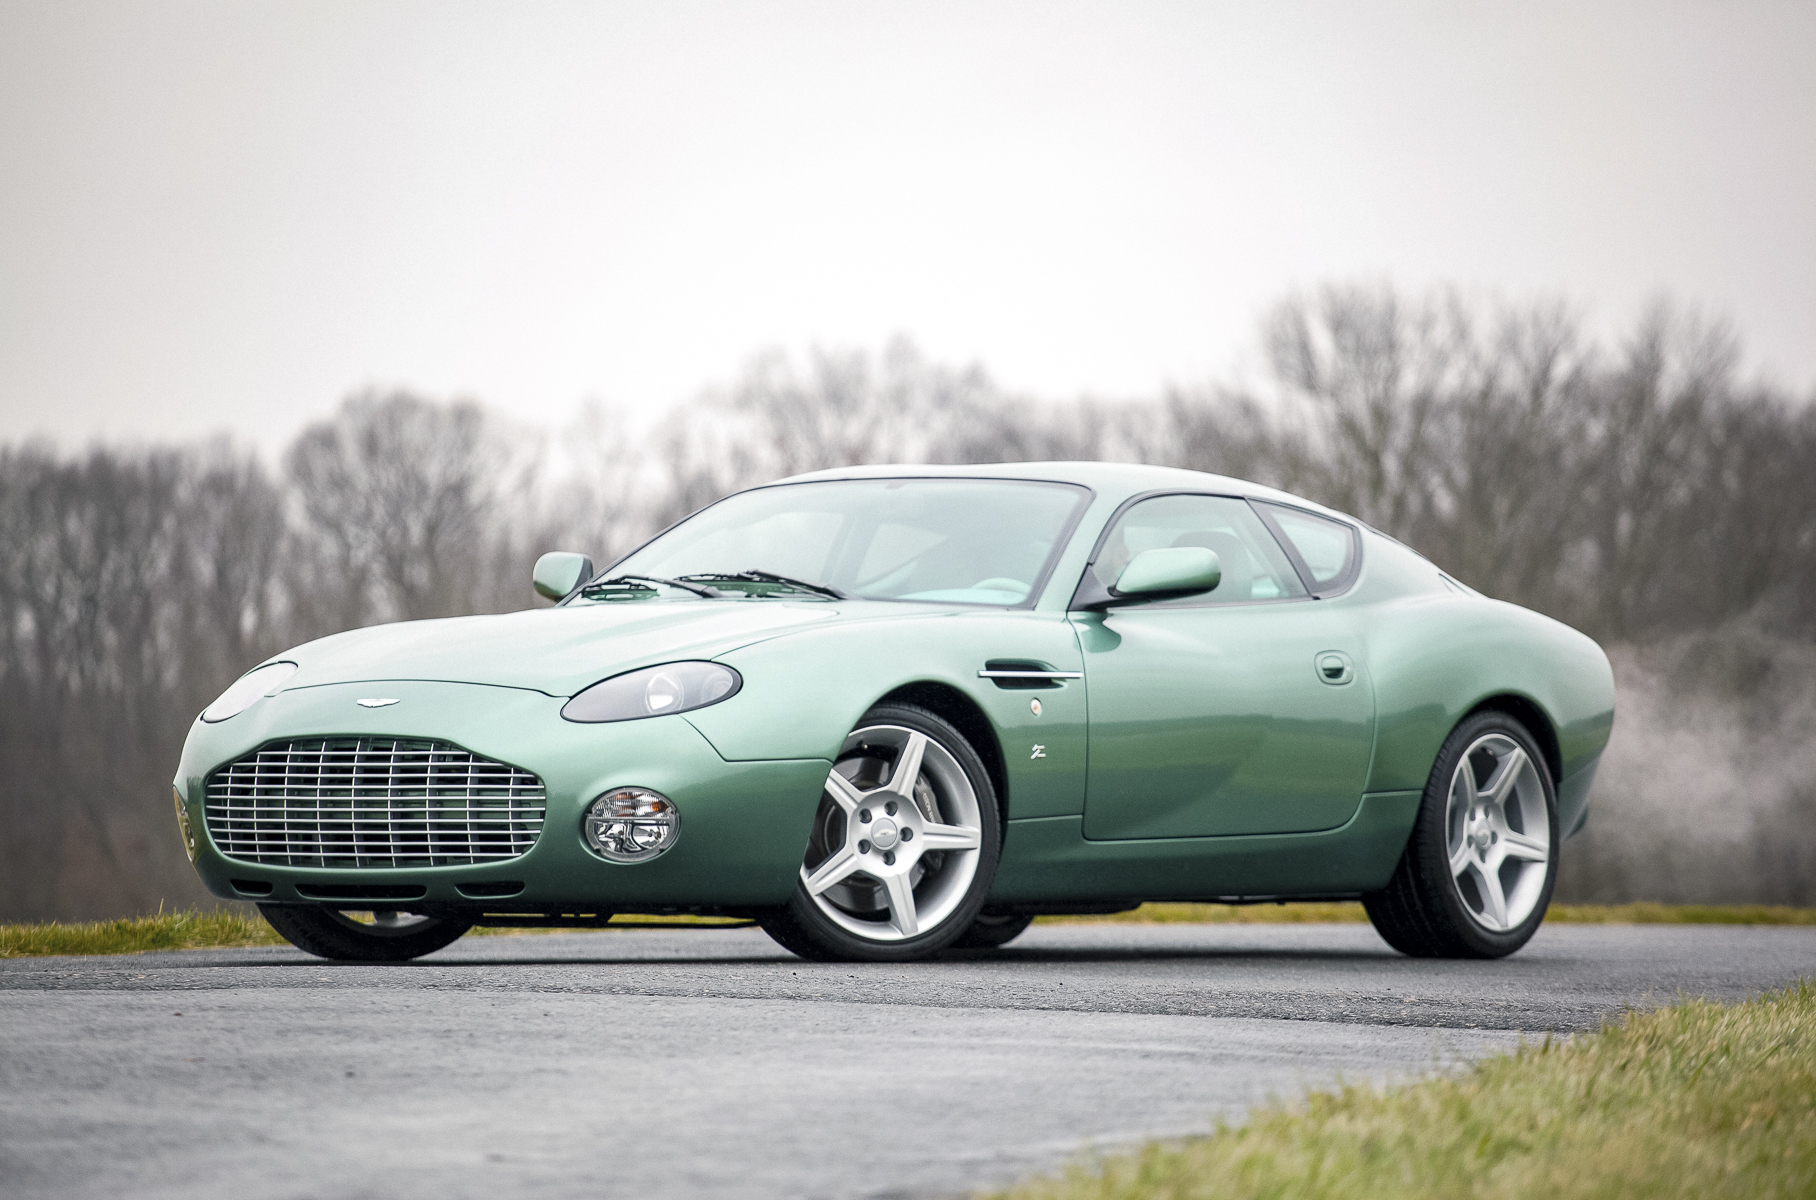 Итальянское кузовное ателье Zagato неоднократно строило уникальные версии Aston Martin, и всякий раз результат оказывался довольно своеобразным. Купе на базе DB7 — не исключение. Колесная база укорочена на 60 мм, а длина на 211 мм. Двигатель — 441-сильный V12. Произведено сто штук